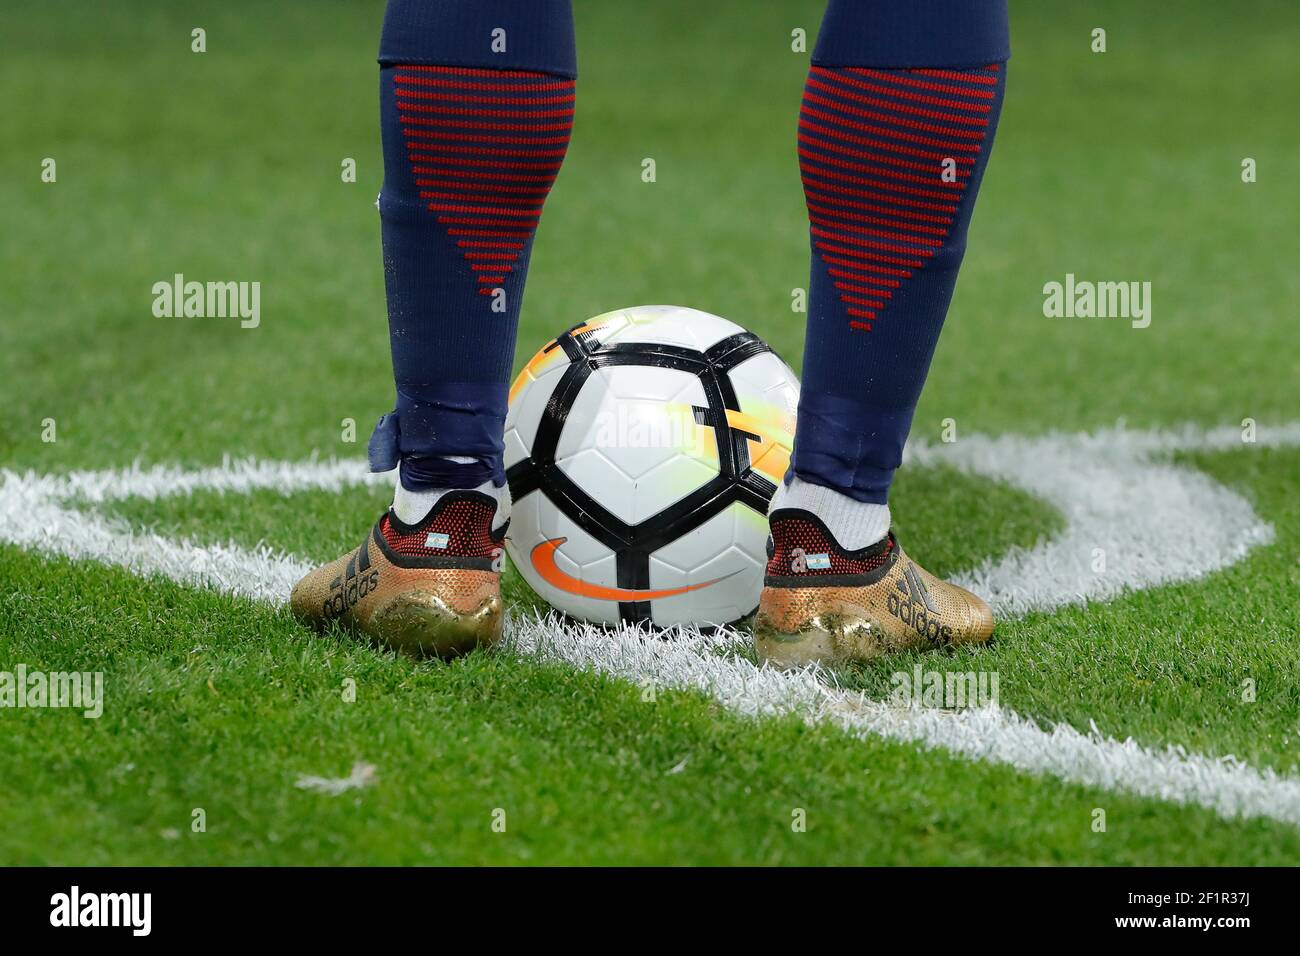 Ilustración de los zapatos de Angel Di (psg) con bandera argentina y balón Nike en la esquina durante la Copa Francesa, ronda 32, partido de fútbol Paris Saint-Germain